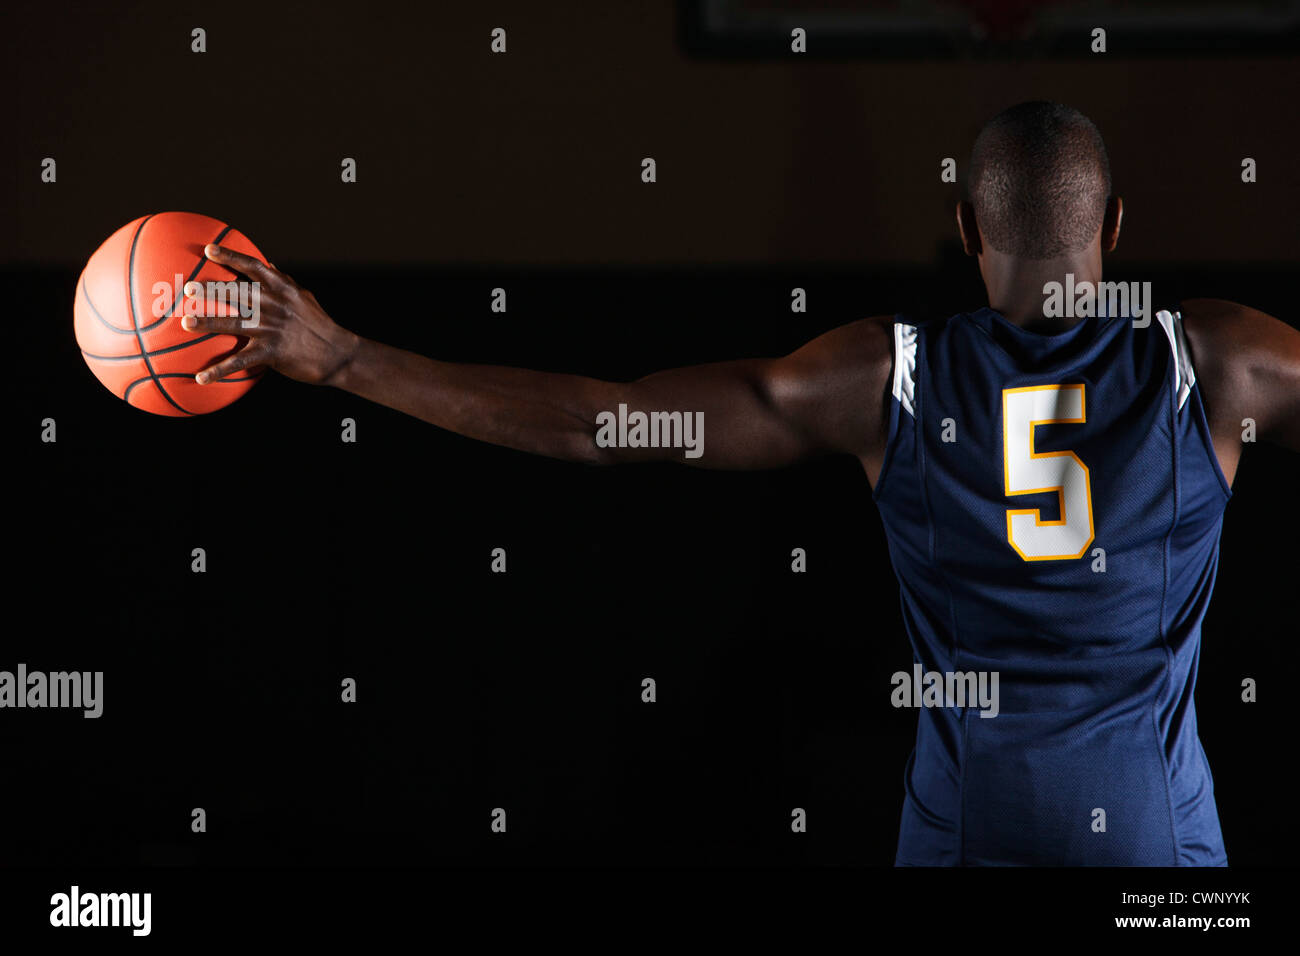 El jugador de baloncesto baloncesto sosteniendo en la mano, vista trasera Foto de stock